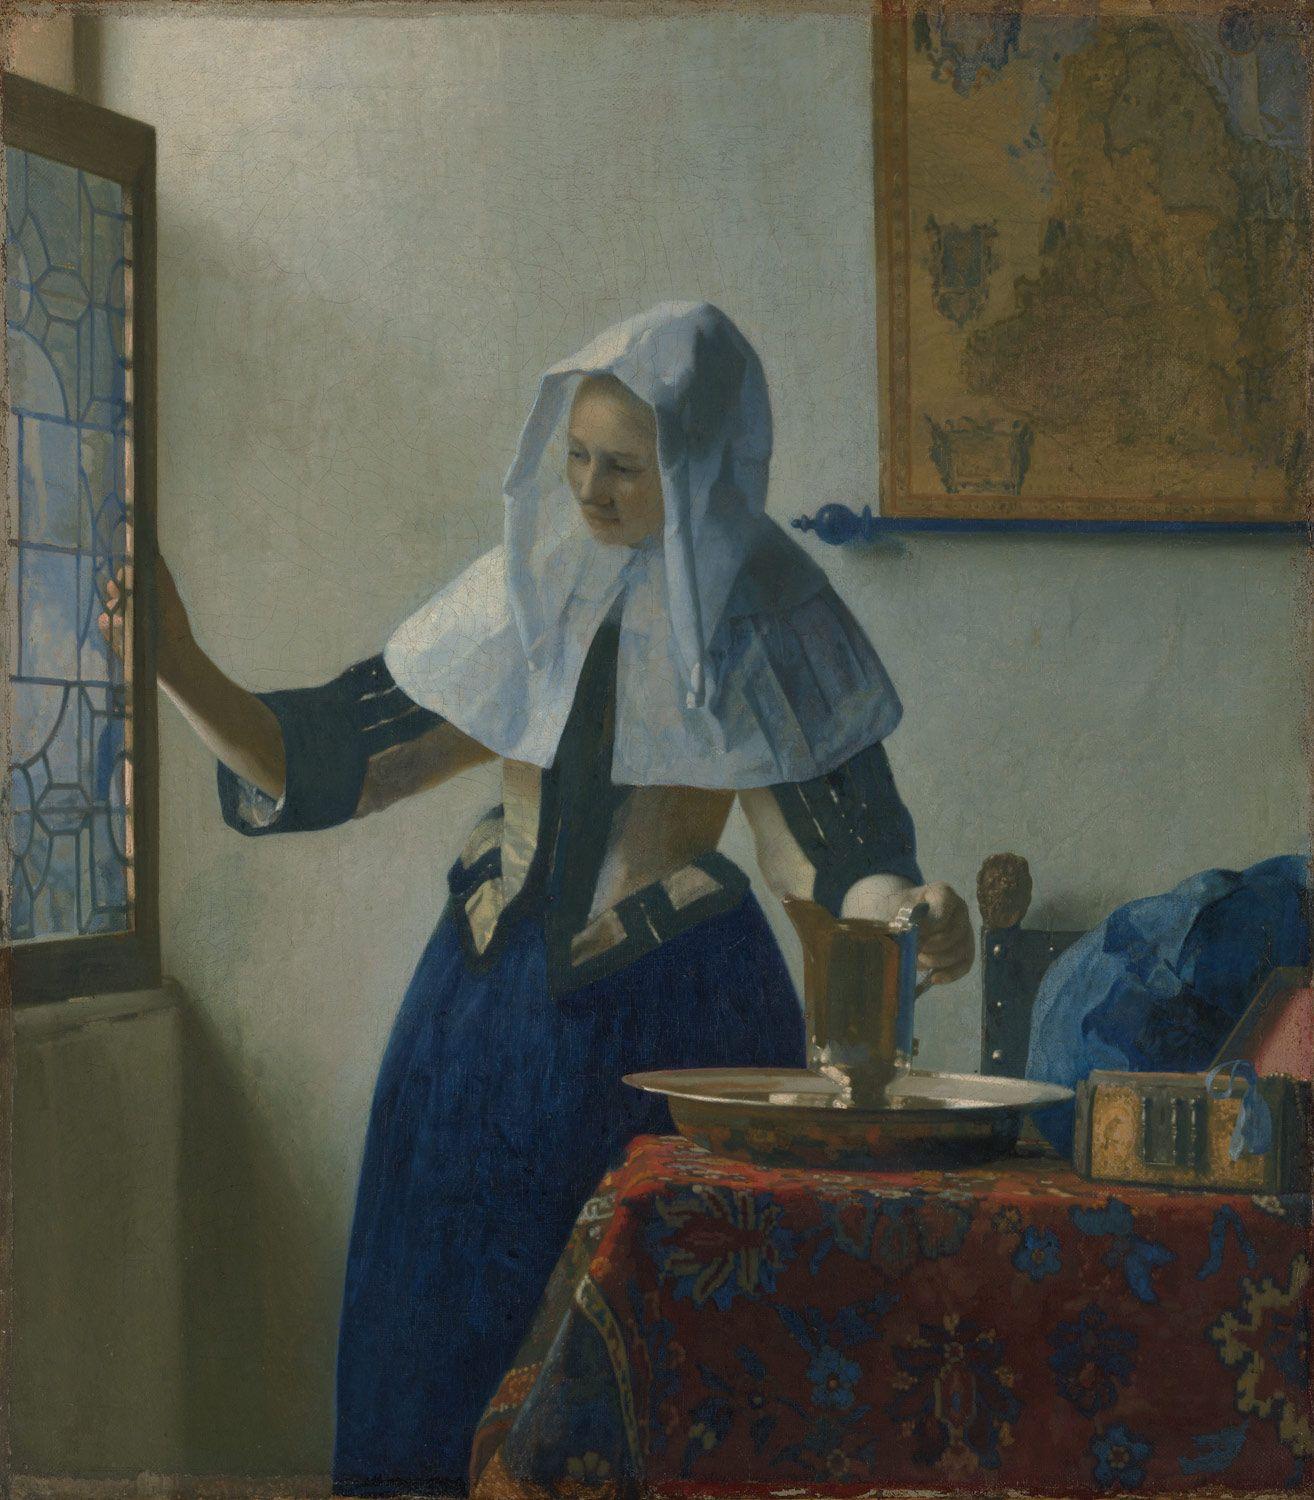 Johannes Vermeer (1632–1675) and The Milkmaid. Essay. Heilbrunn